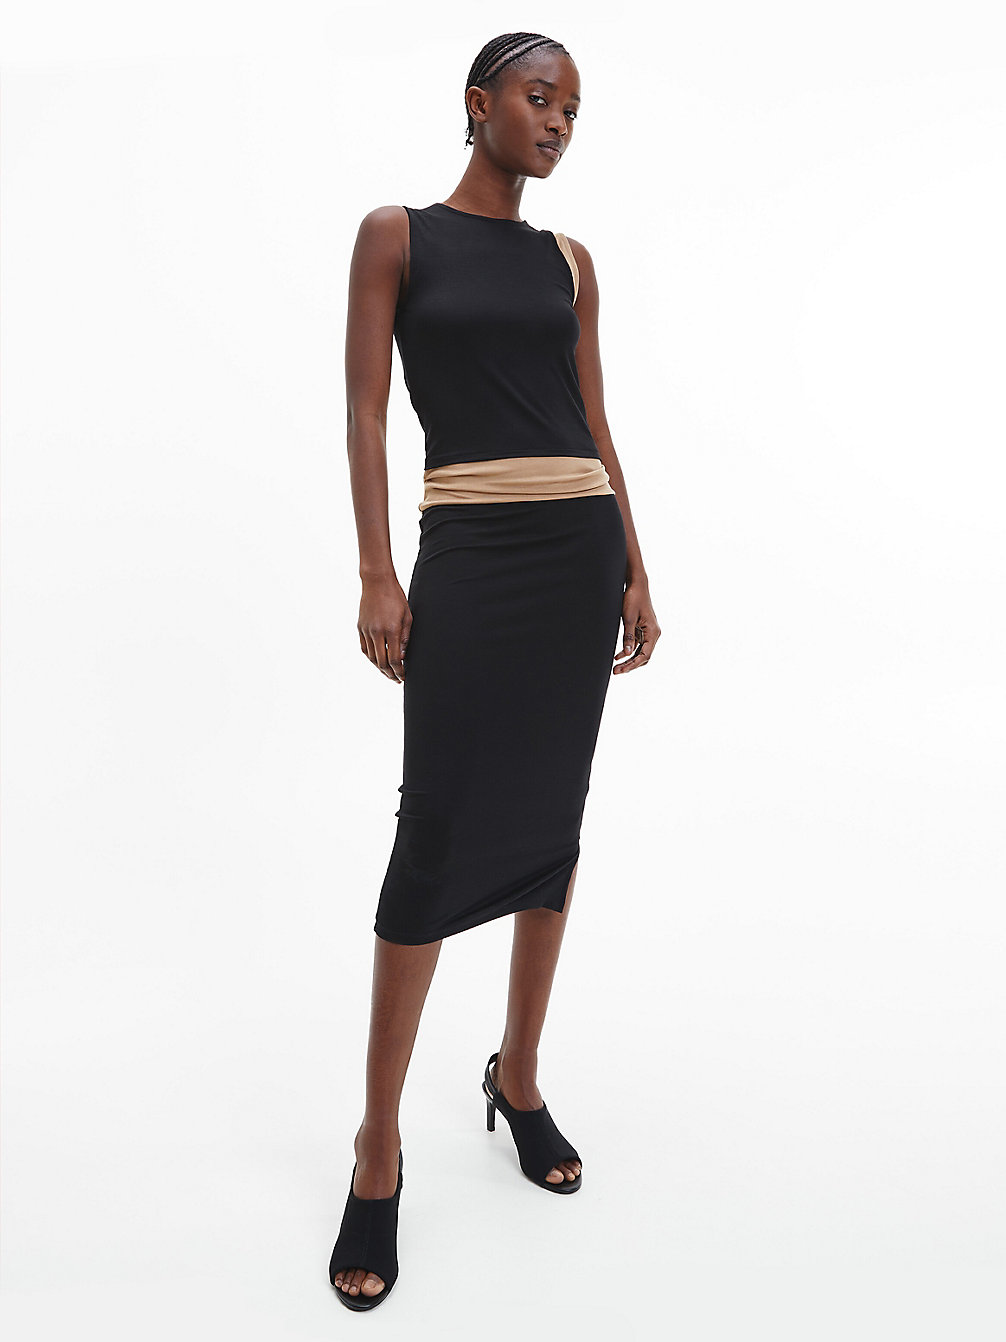 CK BLACK / SAFARI CANVAS Colourblock Bodycon Dress undefined women Calvin Klein